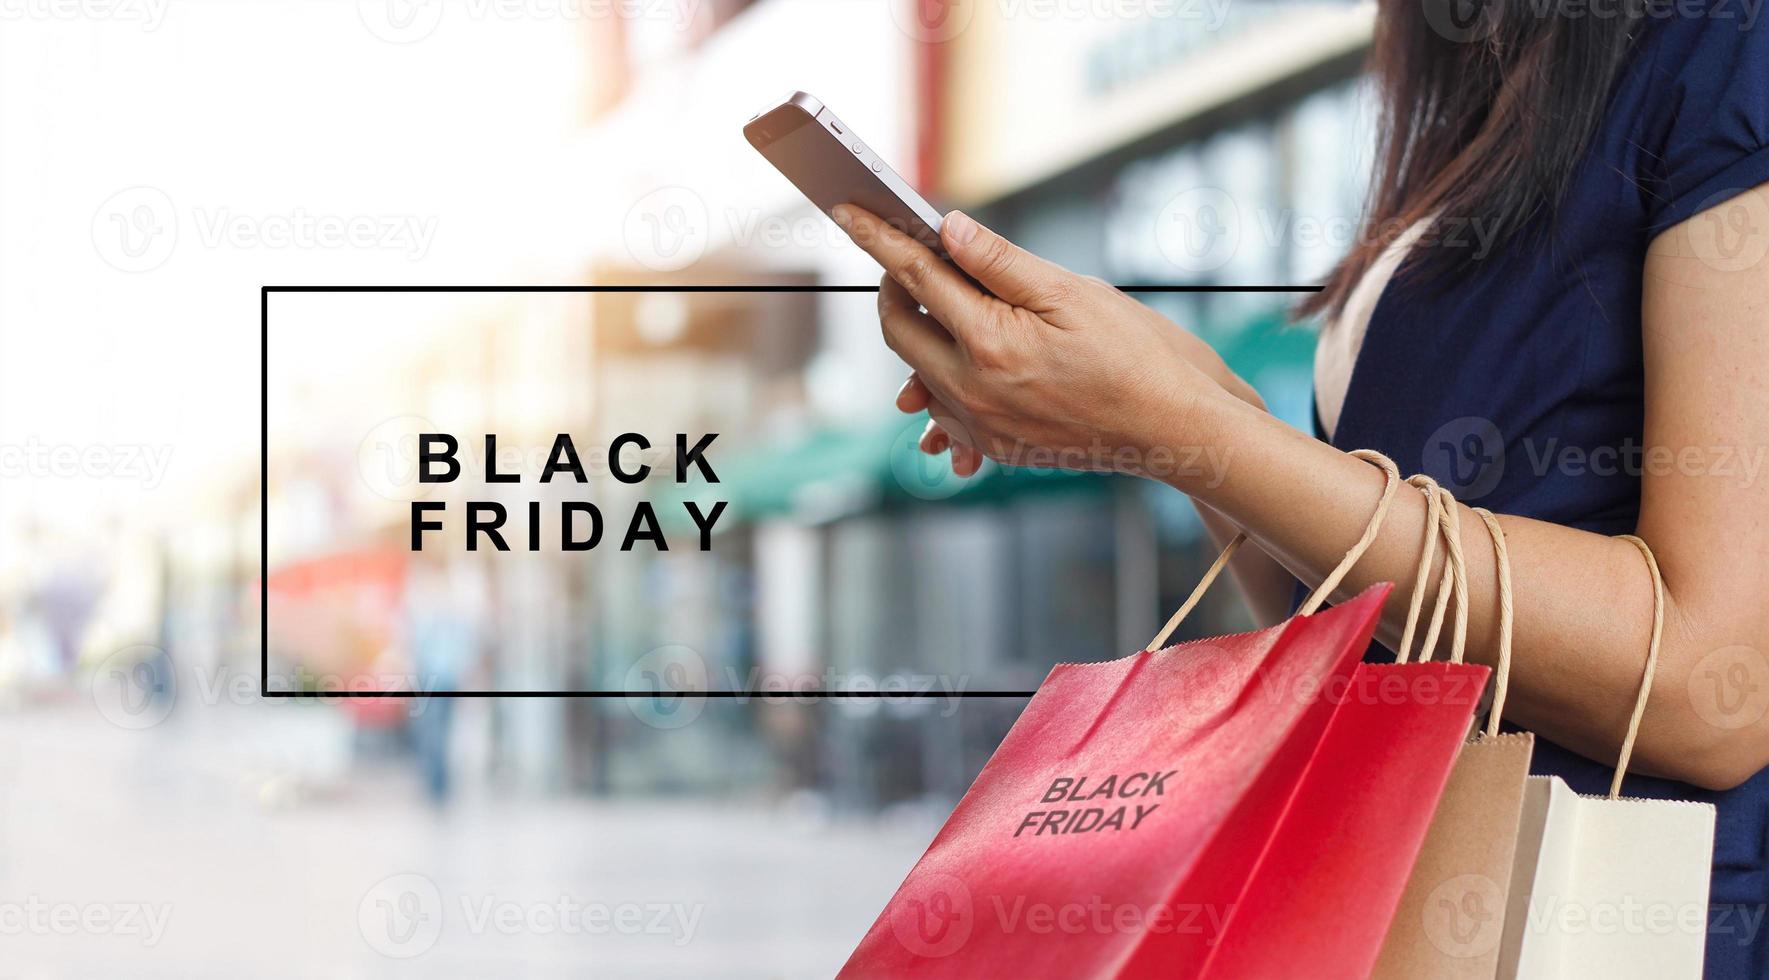 venerdì nero, donna che usa lo smartphone e tiene in mano la borsa della spesa mentre si trova sullo sfondo del centro commerciale foto